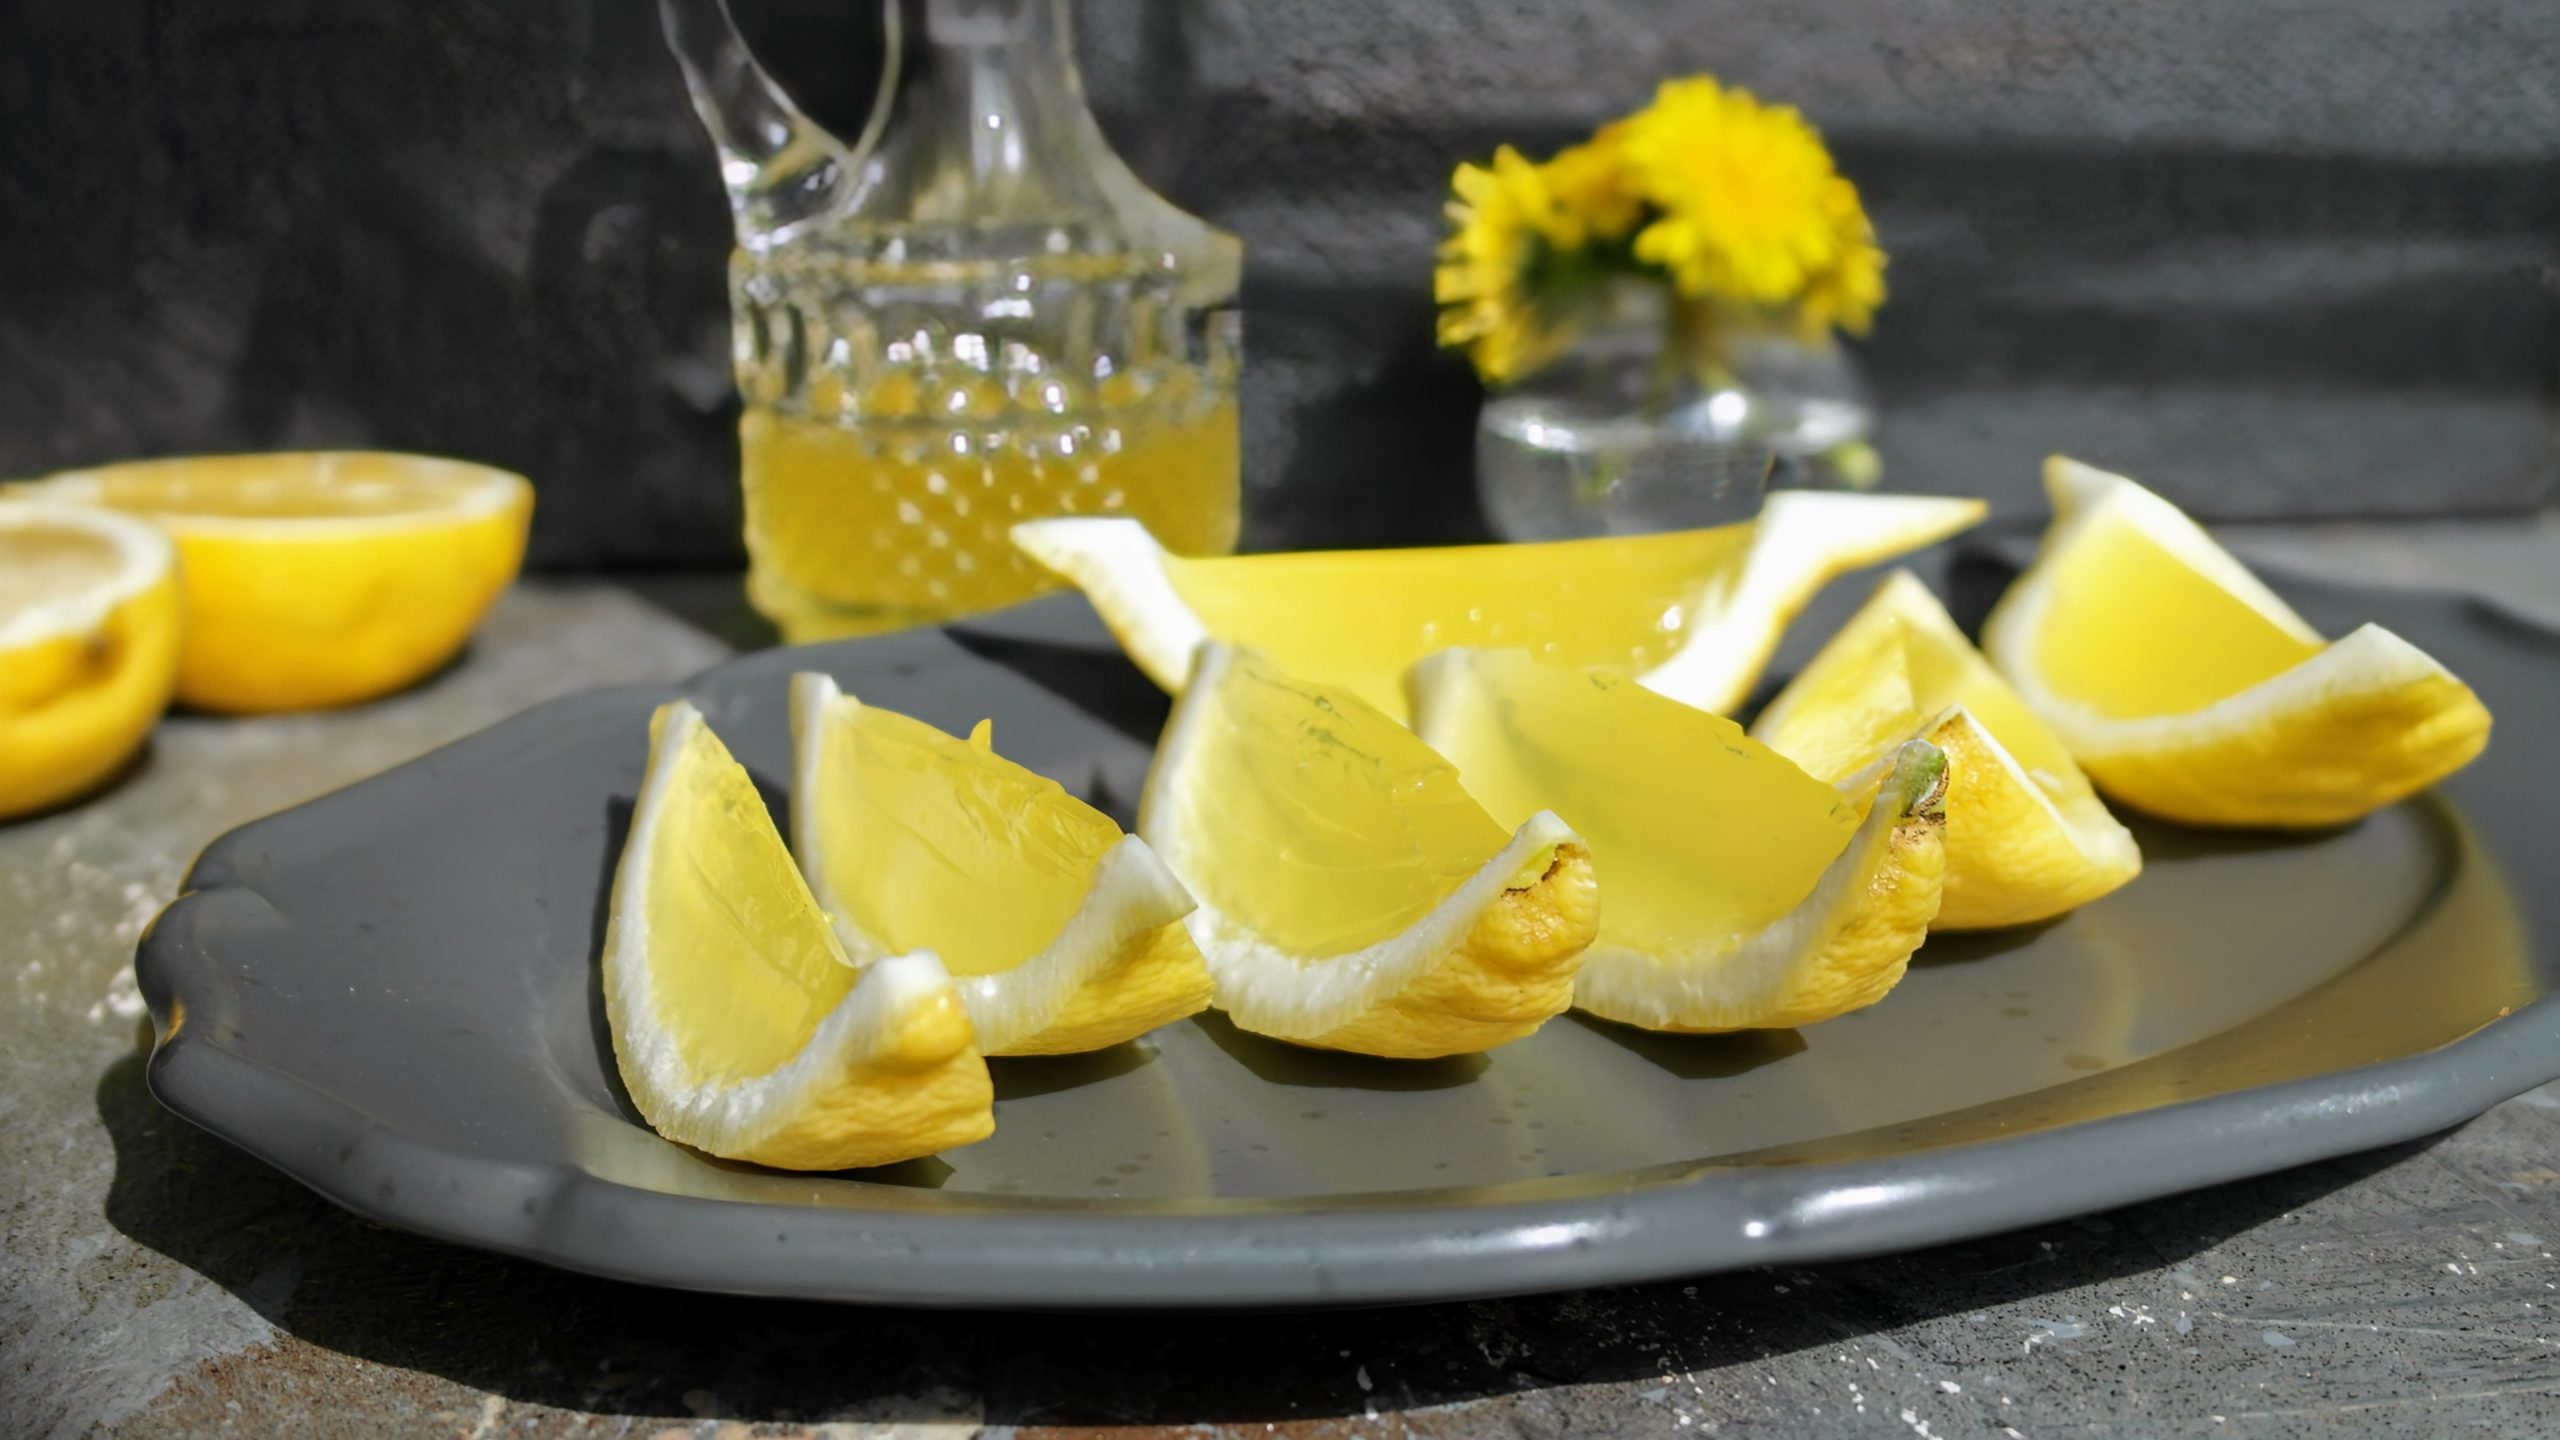 Mehrere Zitronenecken mit dem Limoncello-Gelee gefüllt auf einem schwarzen langen Teller und grauem Untergrund. Im Hintergrund eine Flasche mit Limoncello und einer halbierten Zitrone.